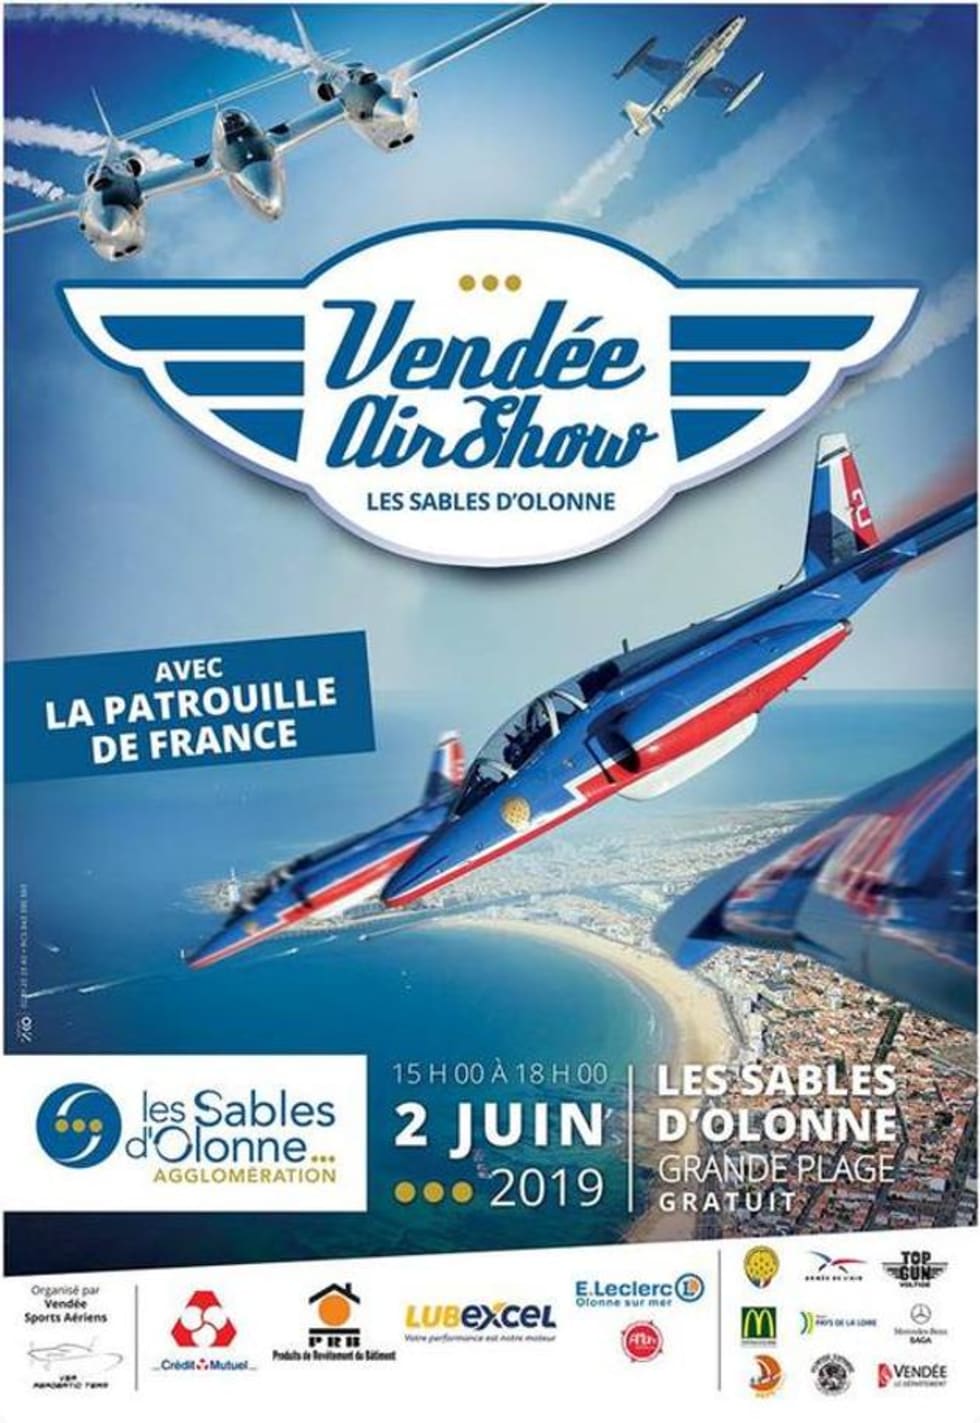 Meeting Vendée Air Show poster